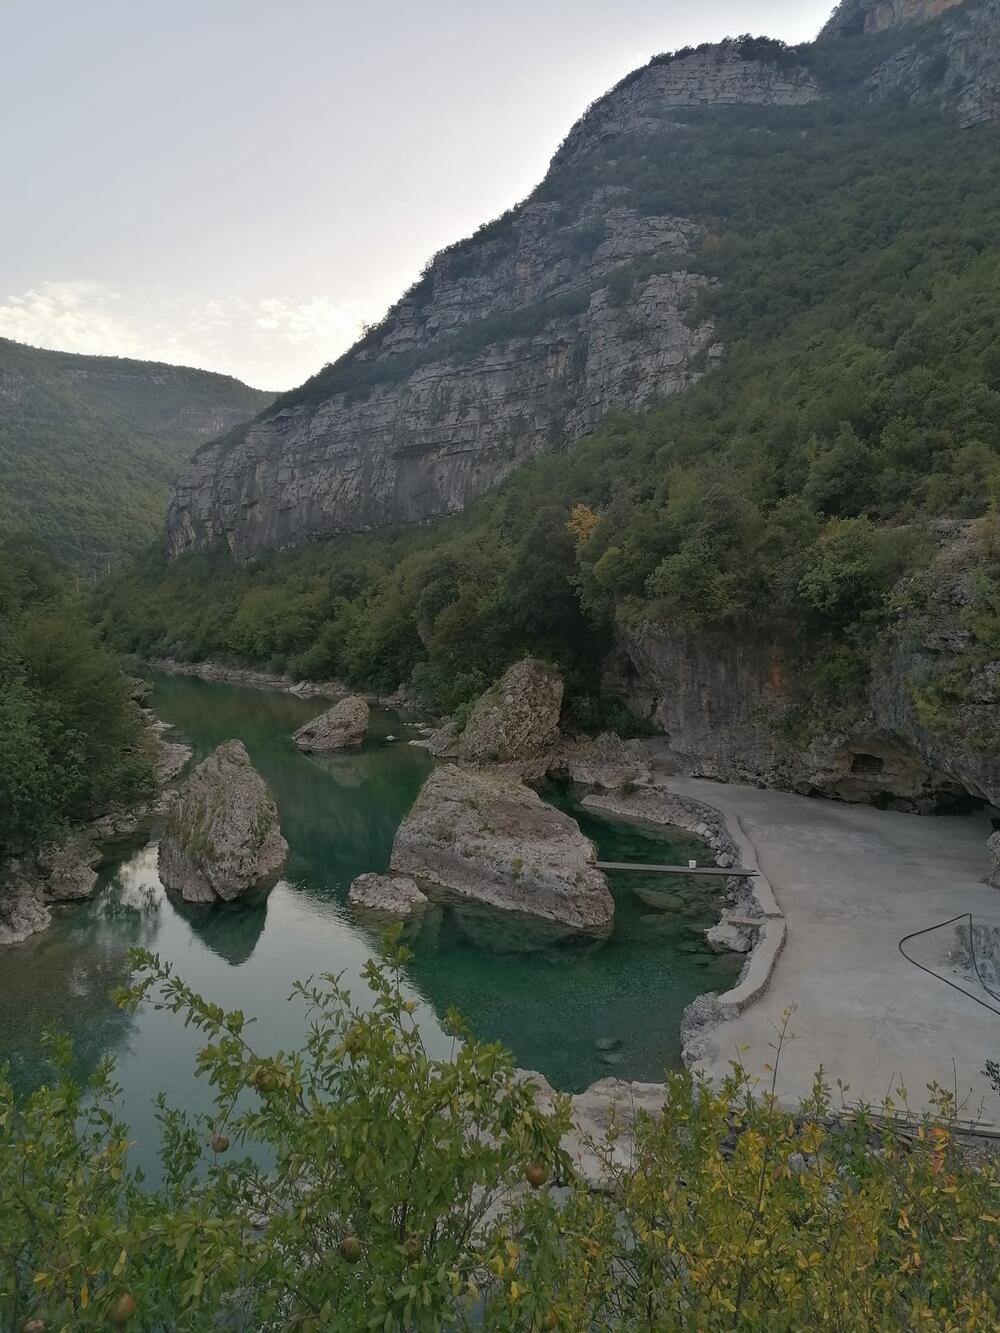 Kanjon Cijevne proglašen je 2017. spomenikom prirode